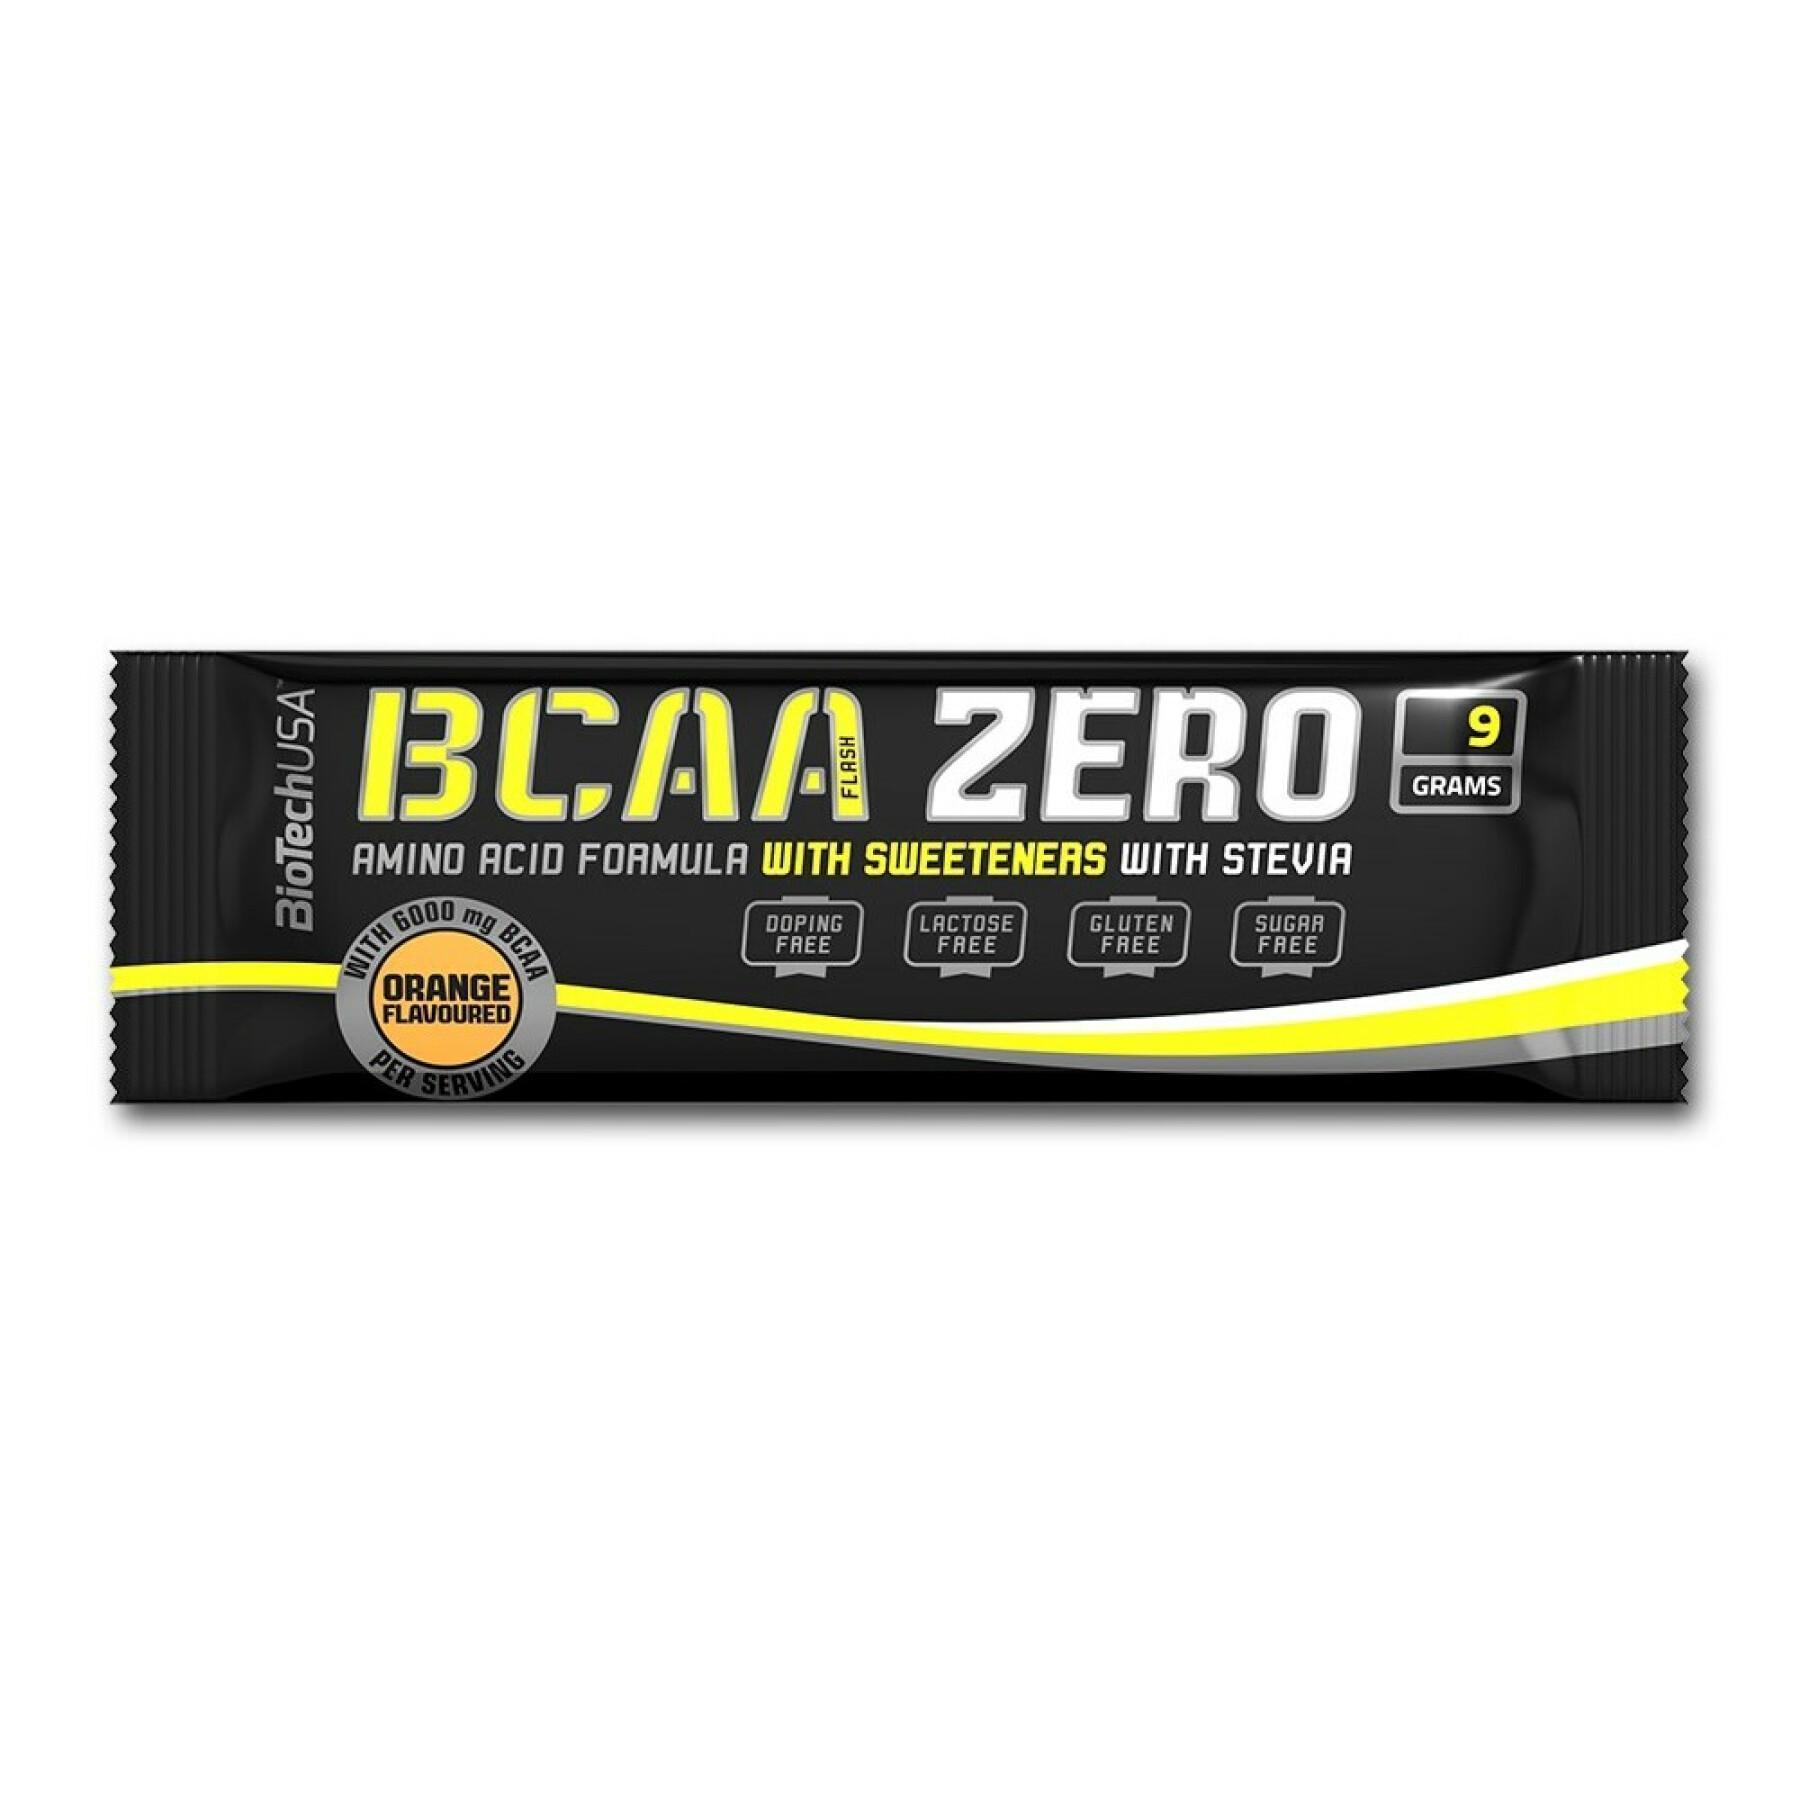 50er Pack Beutel mit Aminosäuren Biotech USA bcaa zero - Pasteque - 9g